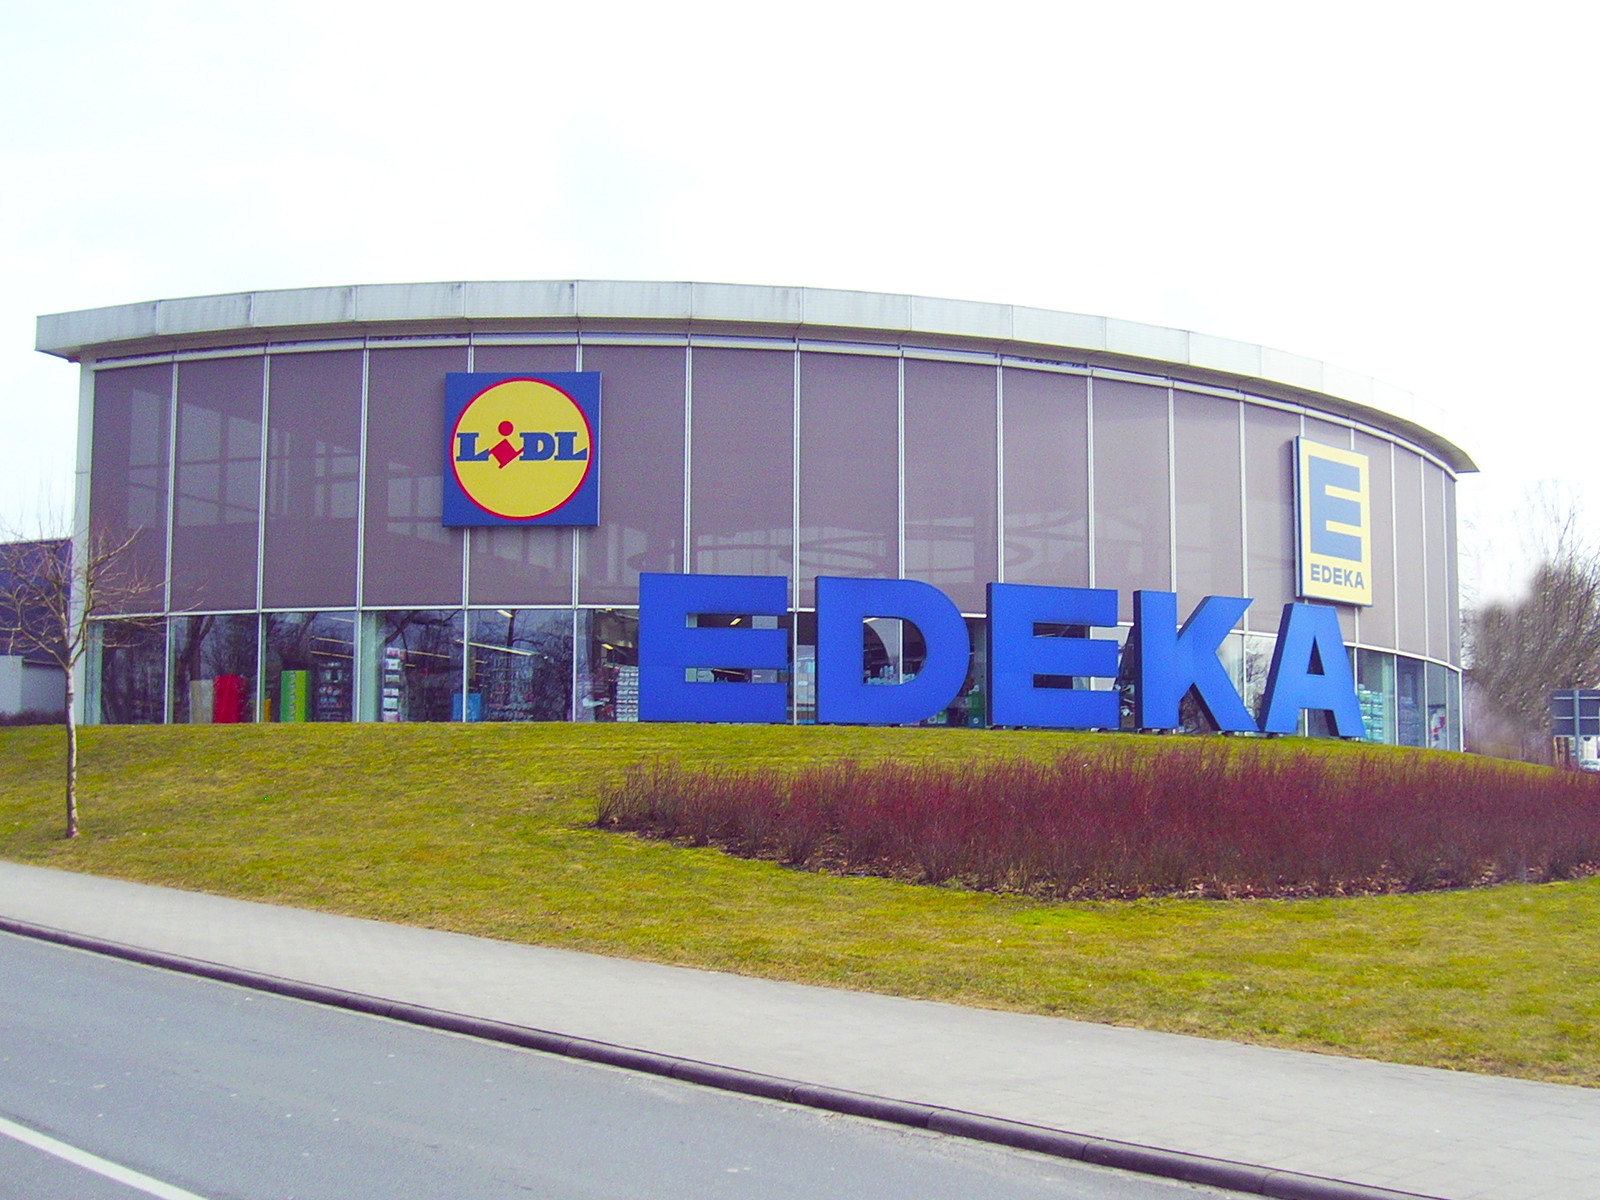 EDEKA - Lidl (Innenanstriche, Fassadenanstriche)